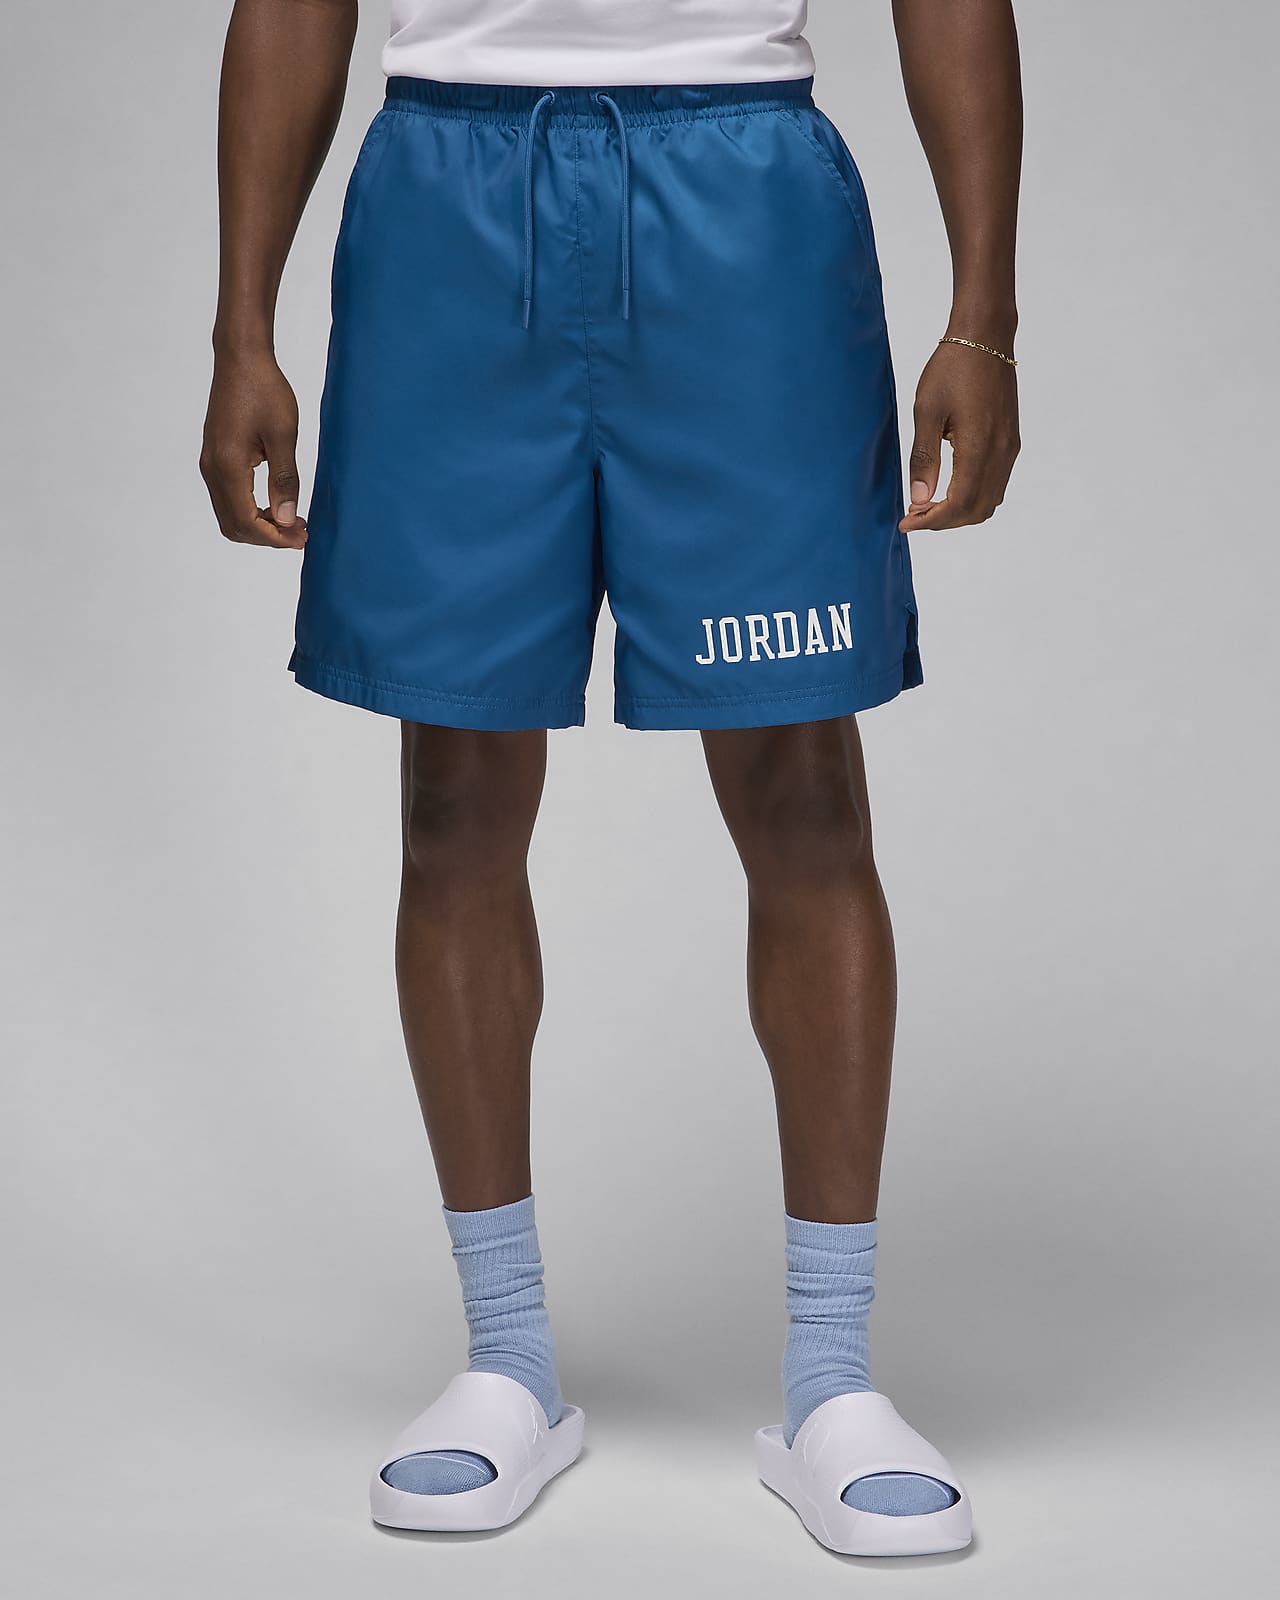 Shorts para la piscina para hombre Jordan Essentials